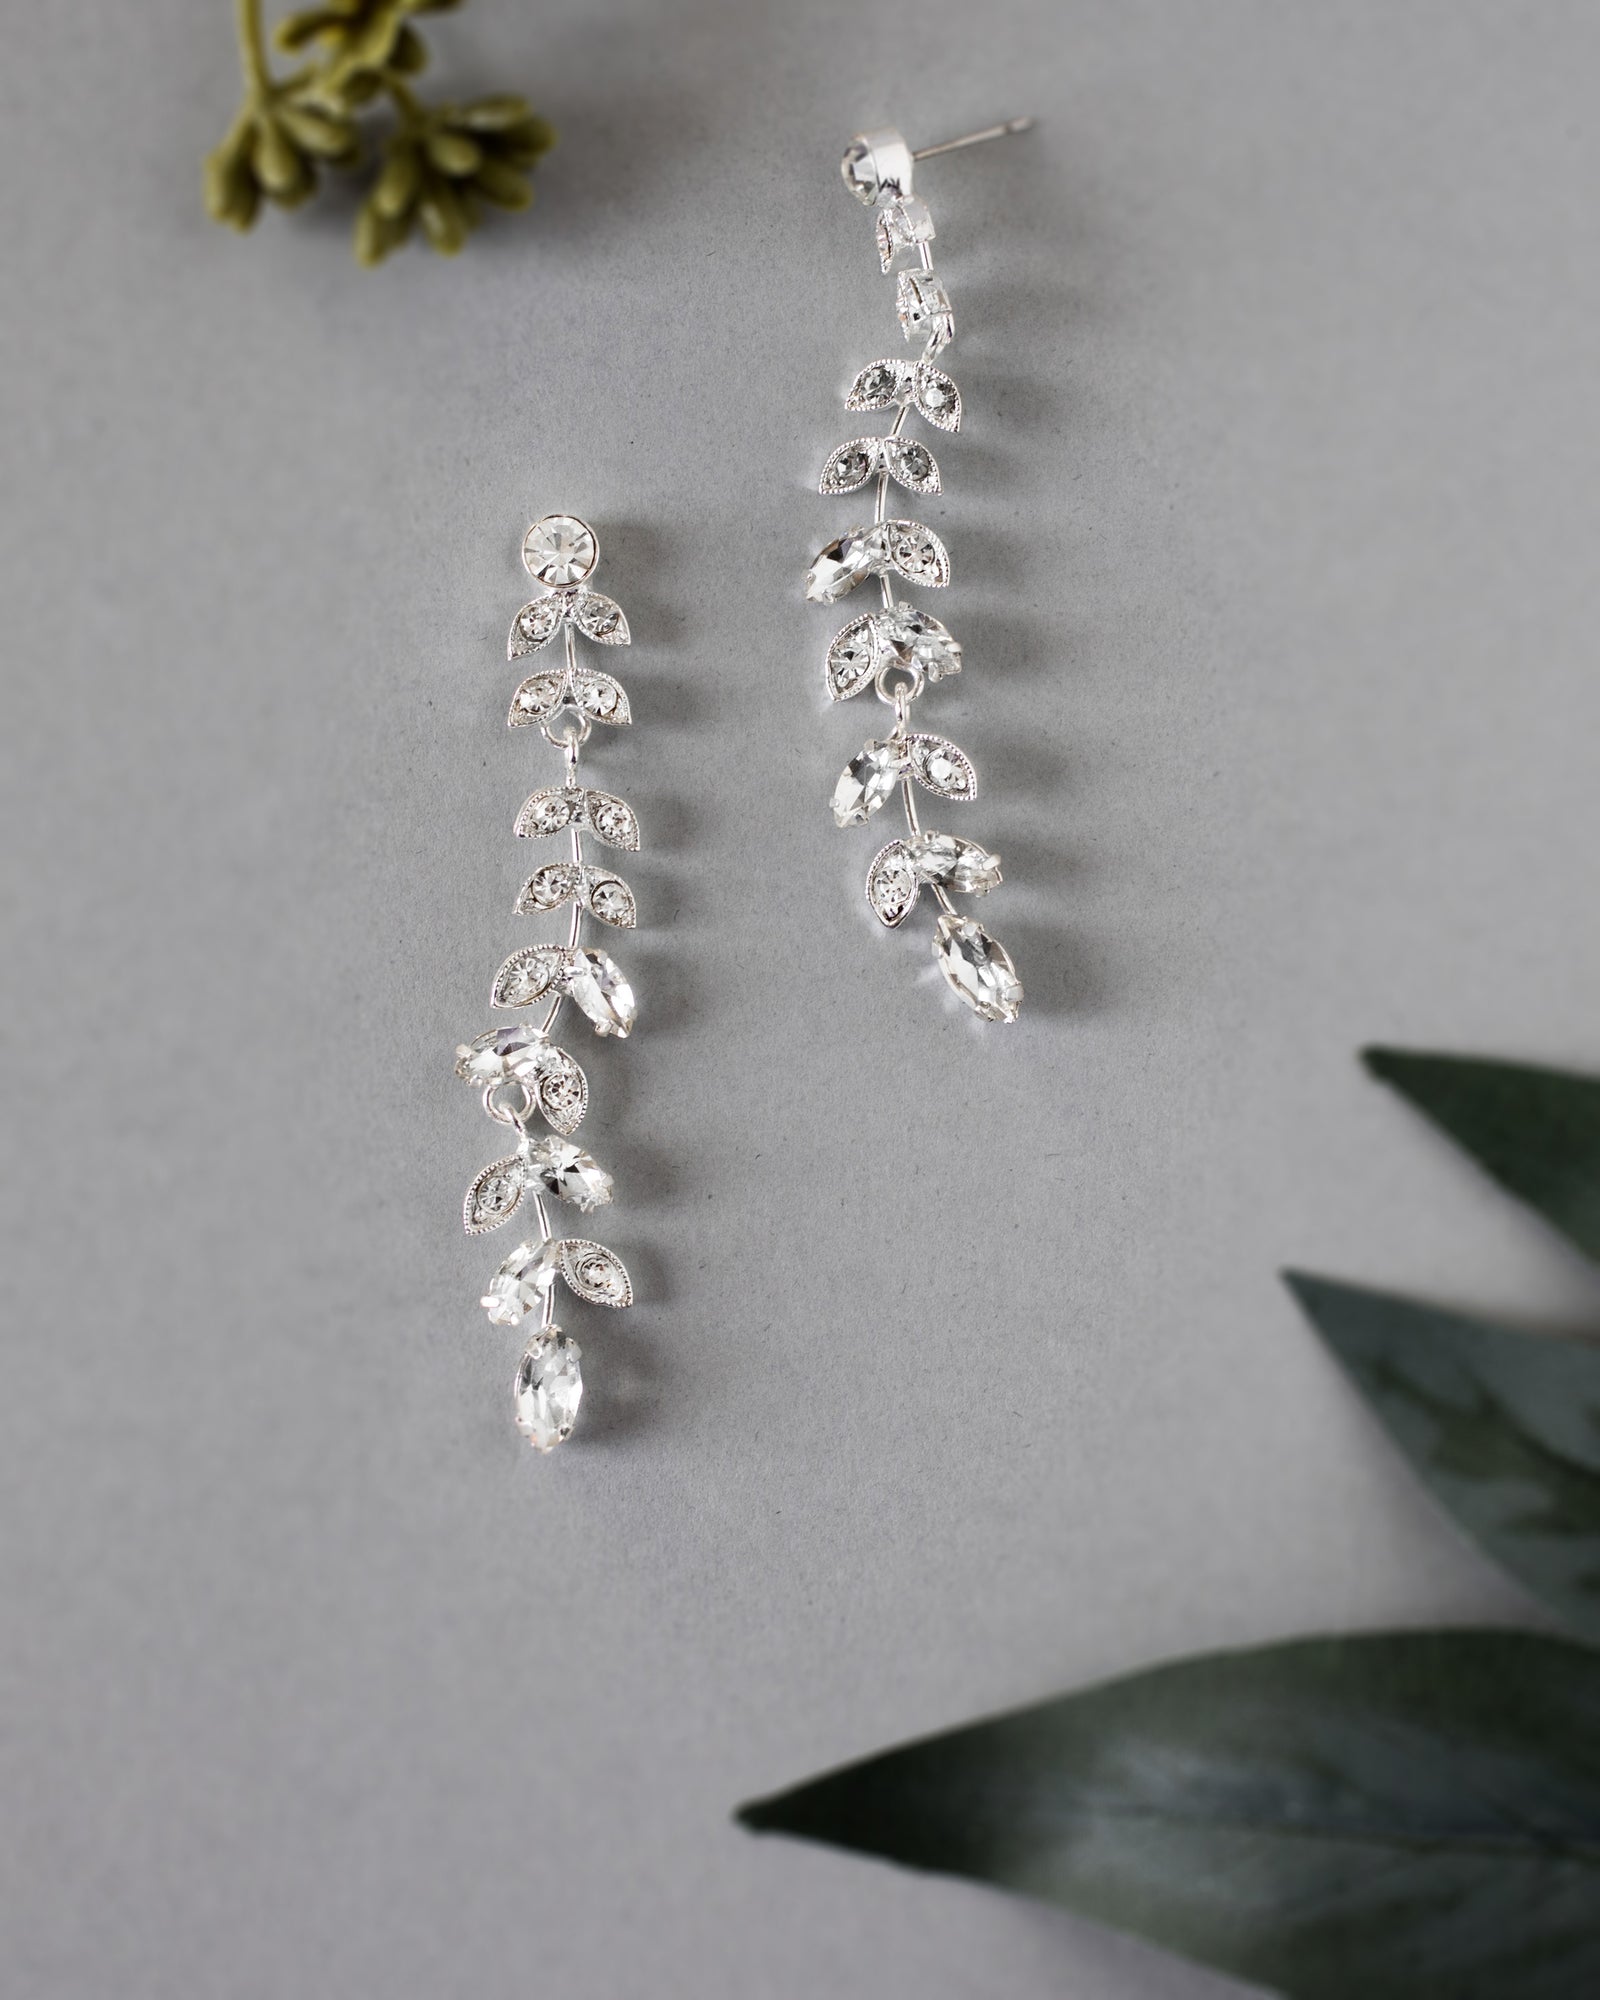 Unique wedding jewelry - Pearl bridal earrings - Pearl cluster drop earrings  - Style #2307, pearl drops - lenajohansen.dk